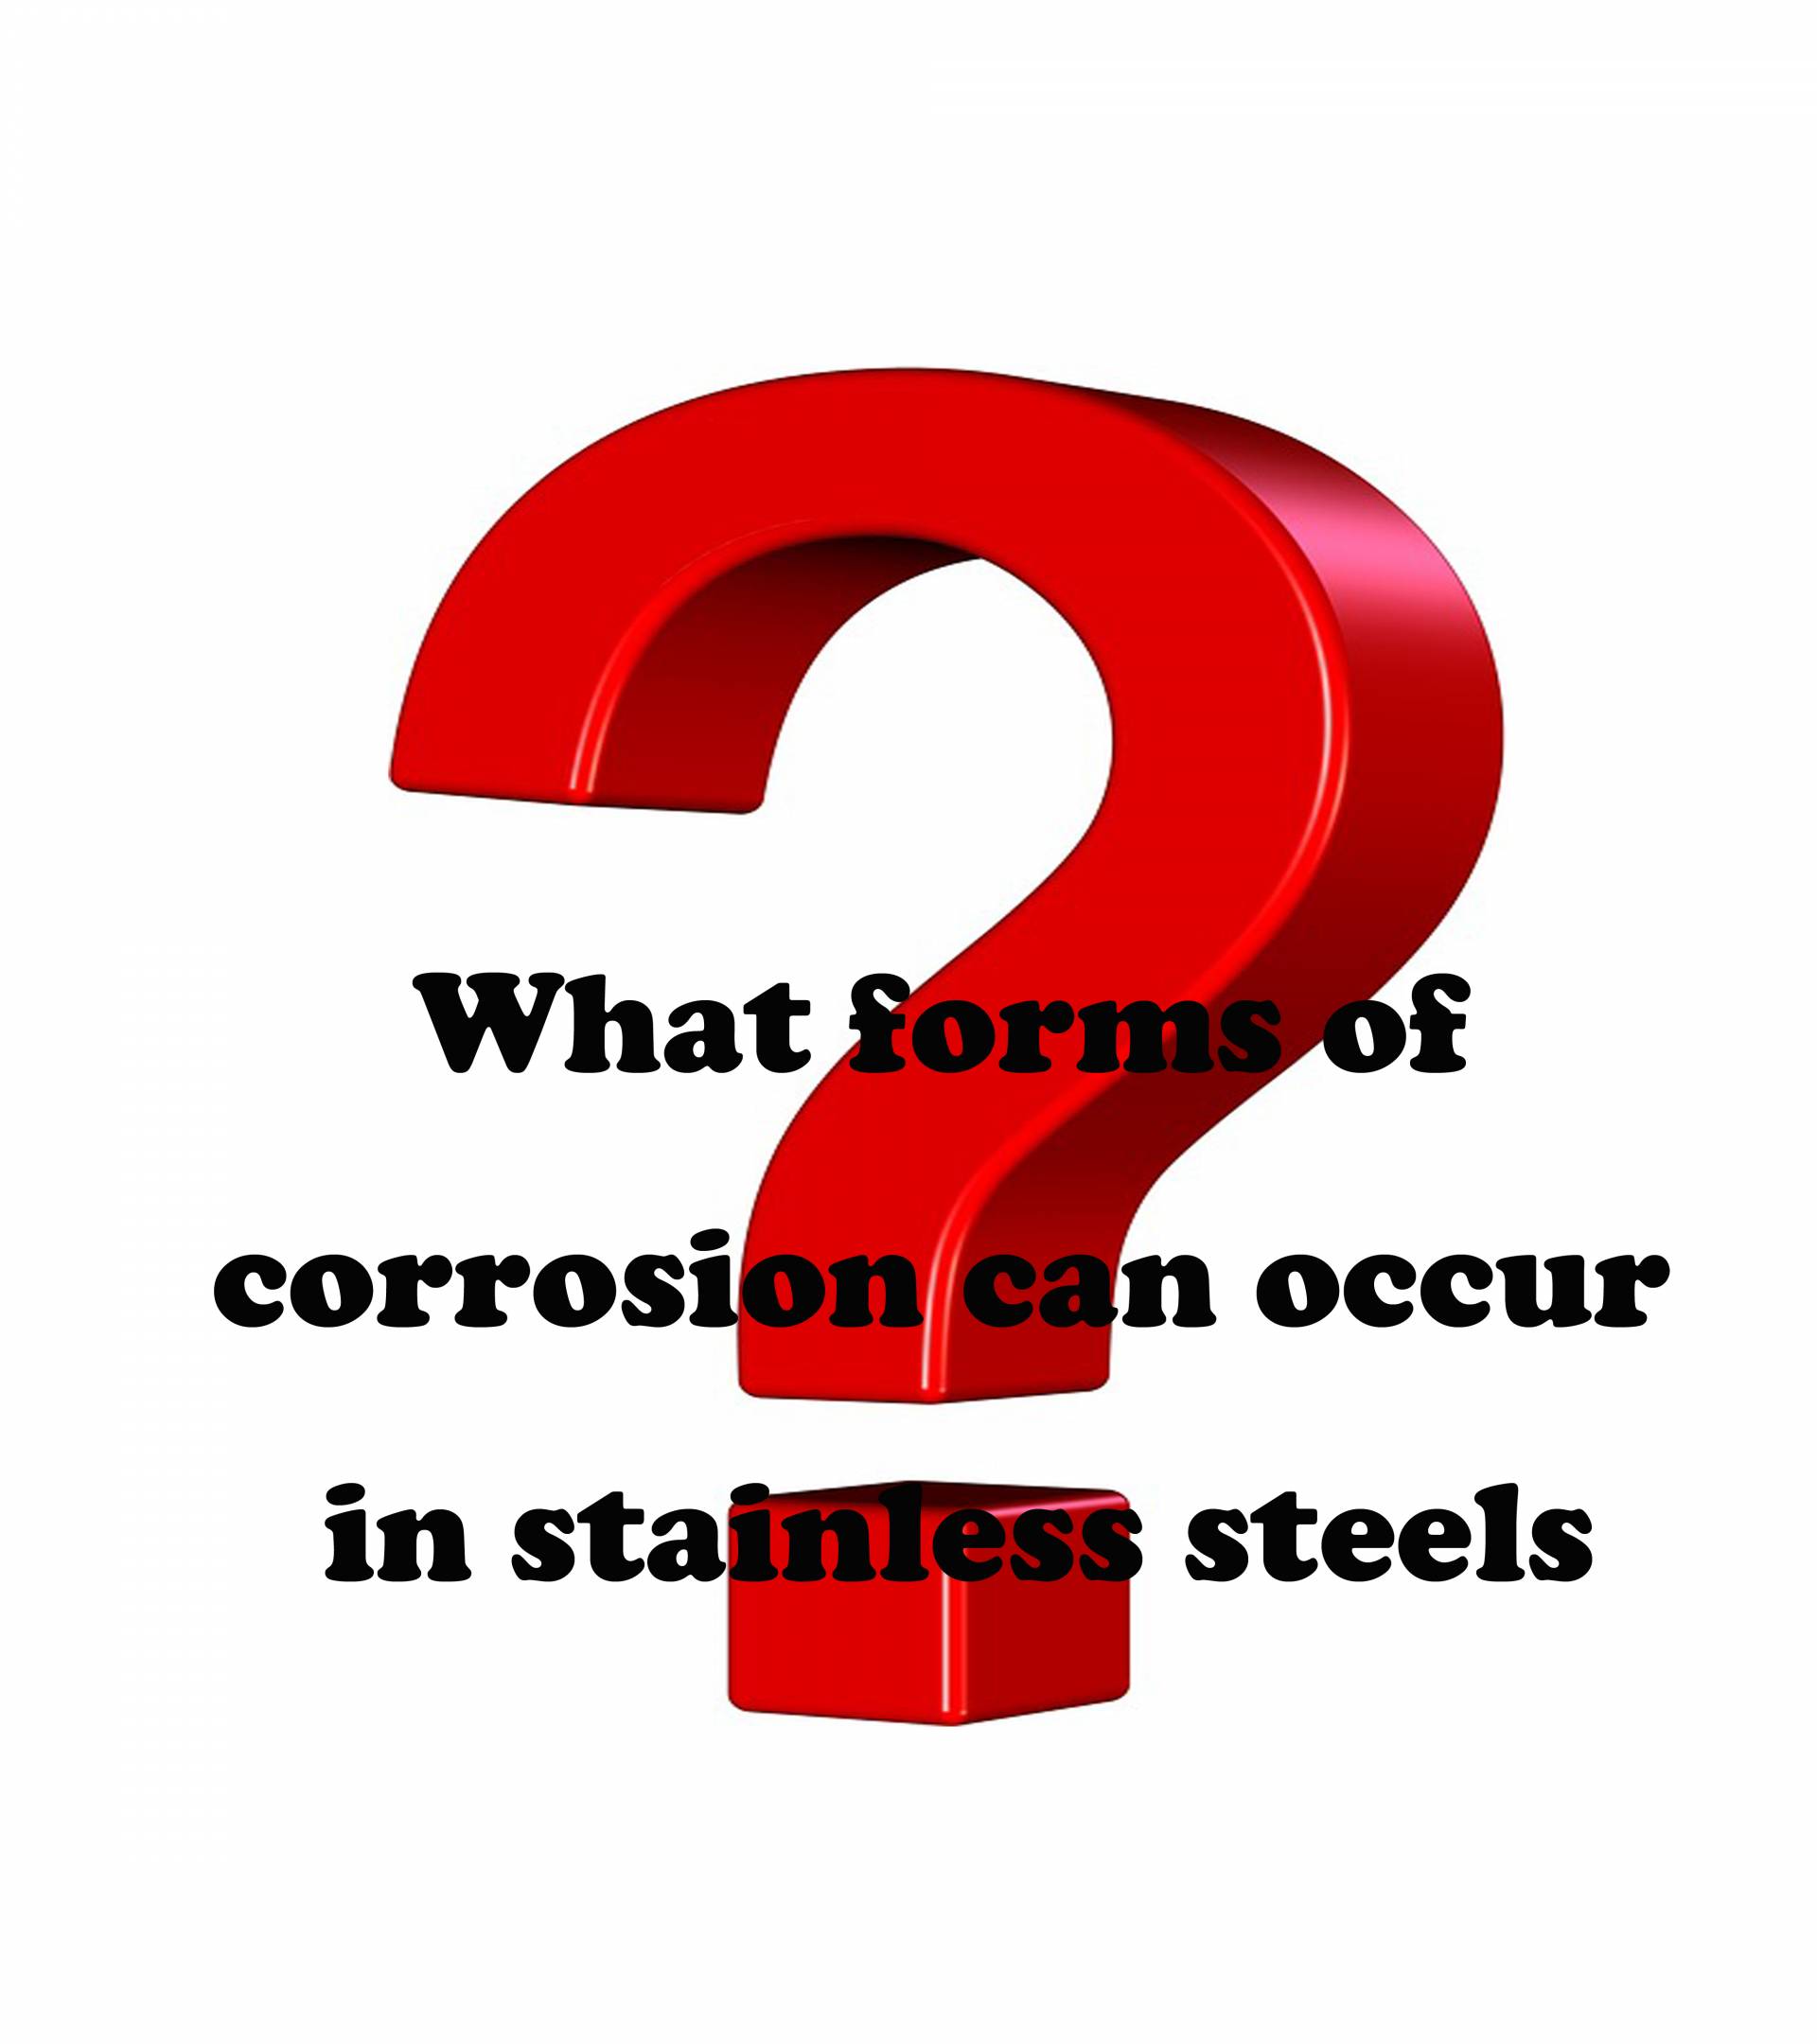 Welche Formen der Korrosion können bei Edelstählen auftreten?